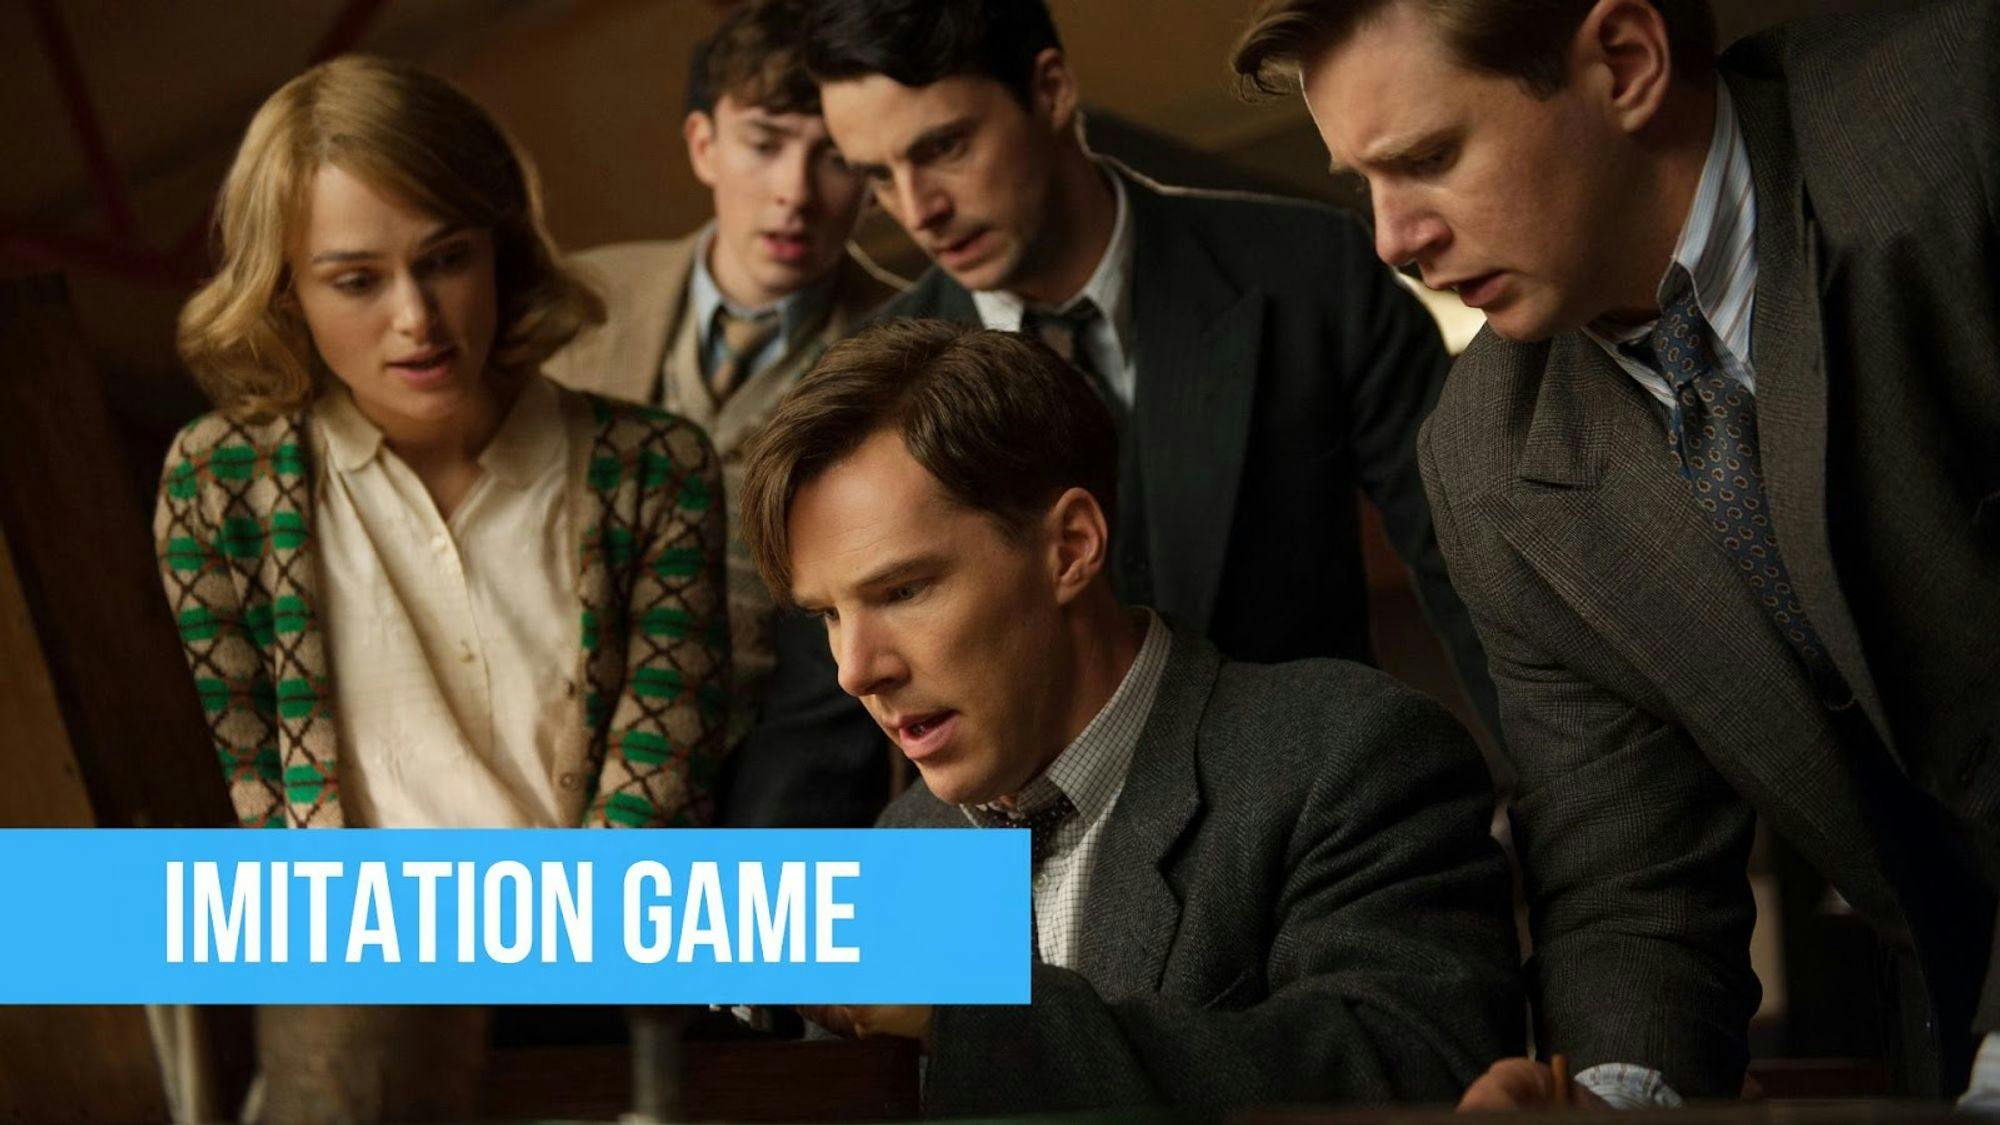 poster du film Imitation game avec Alan Turing et son équipe avec un titre sur fond bleu